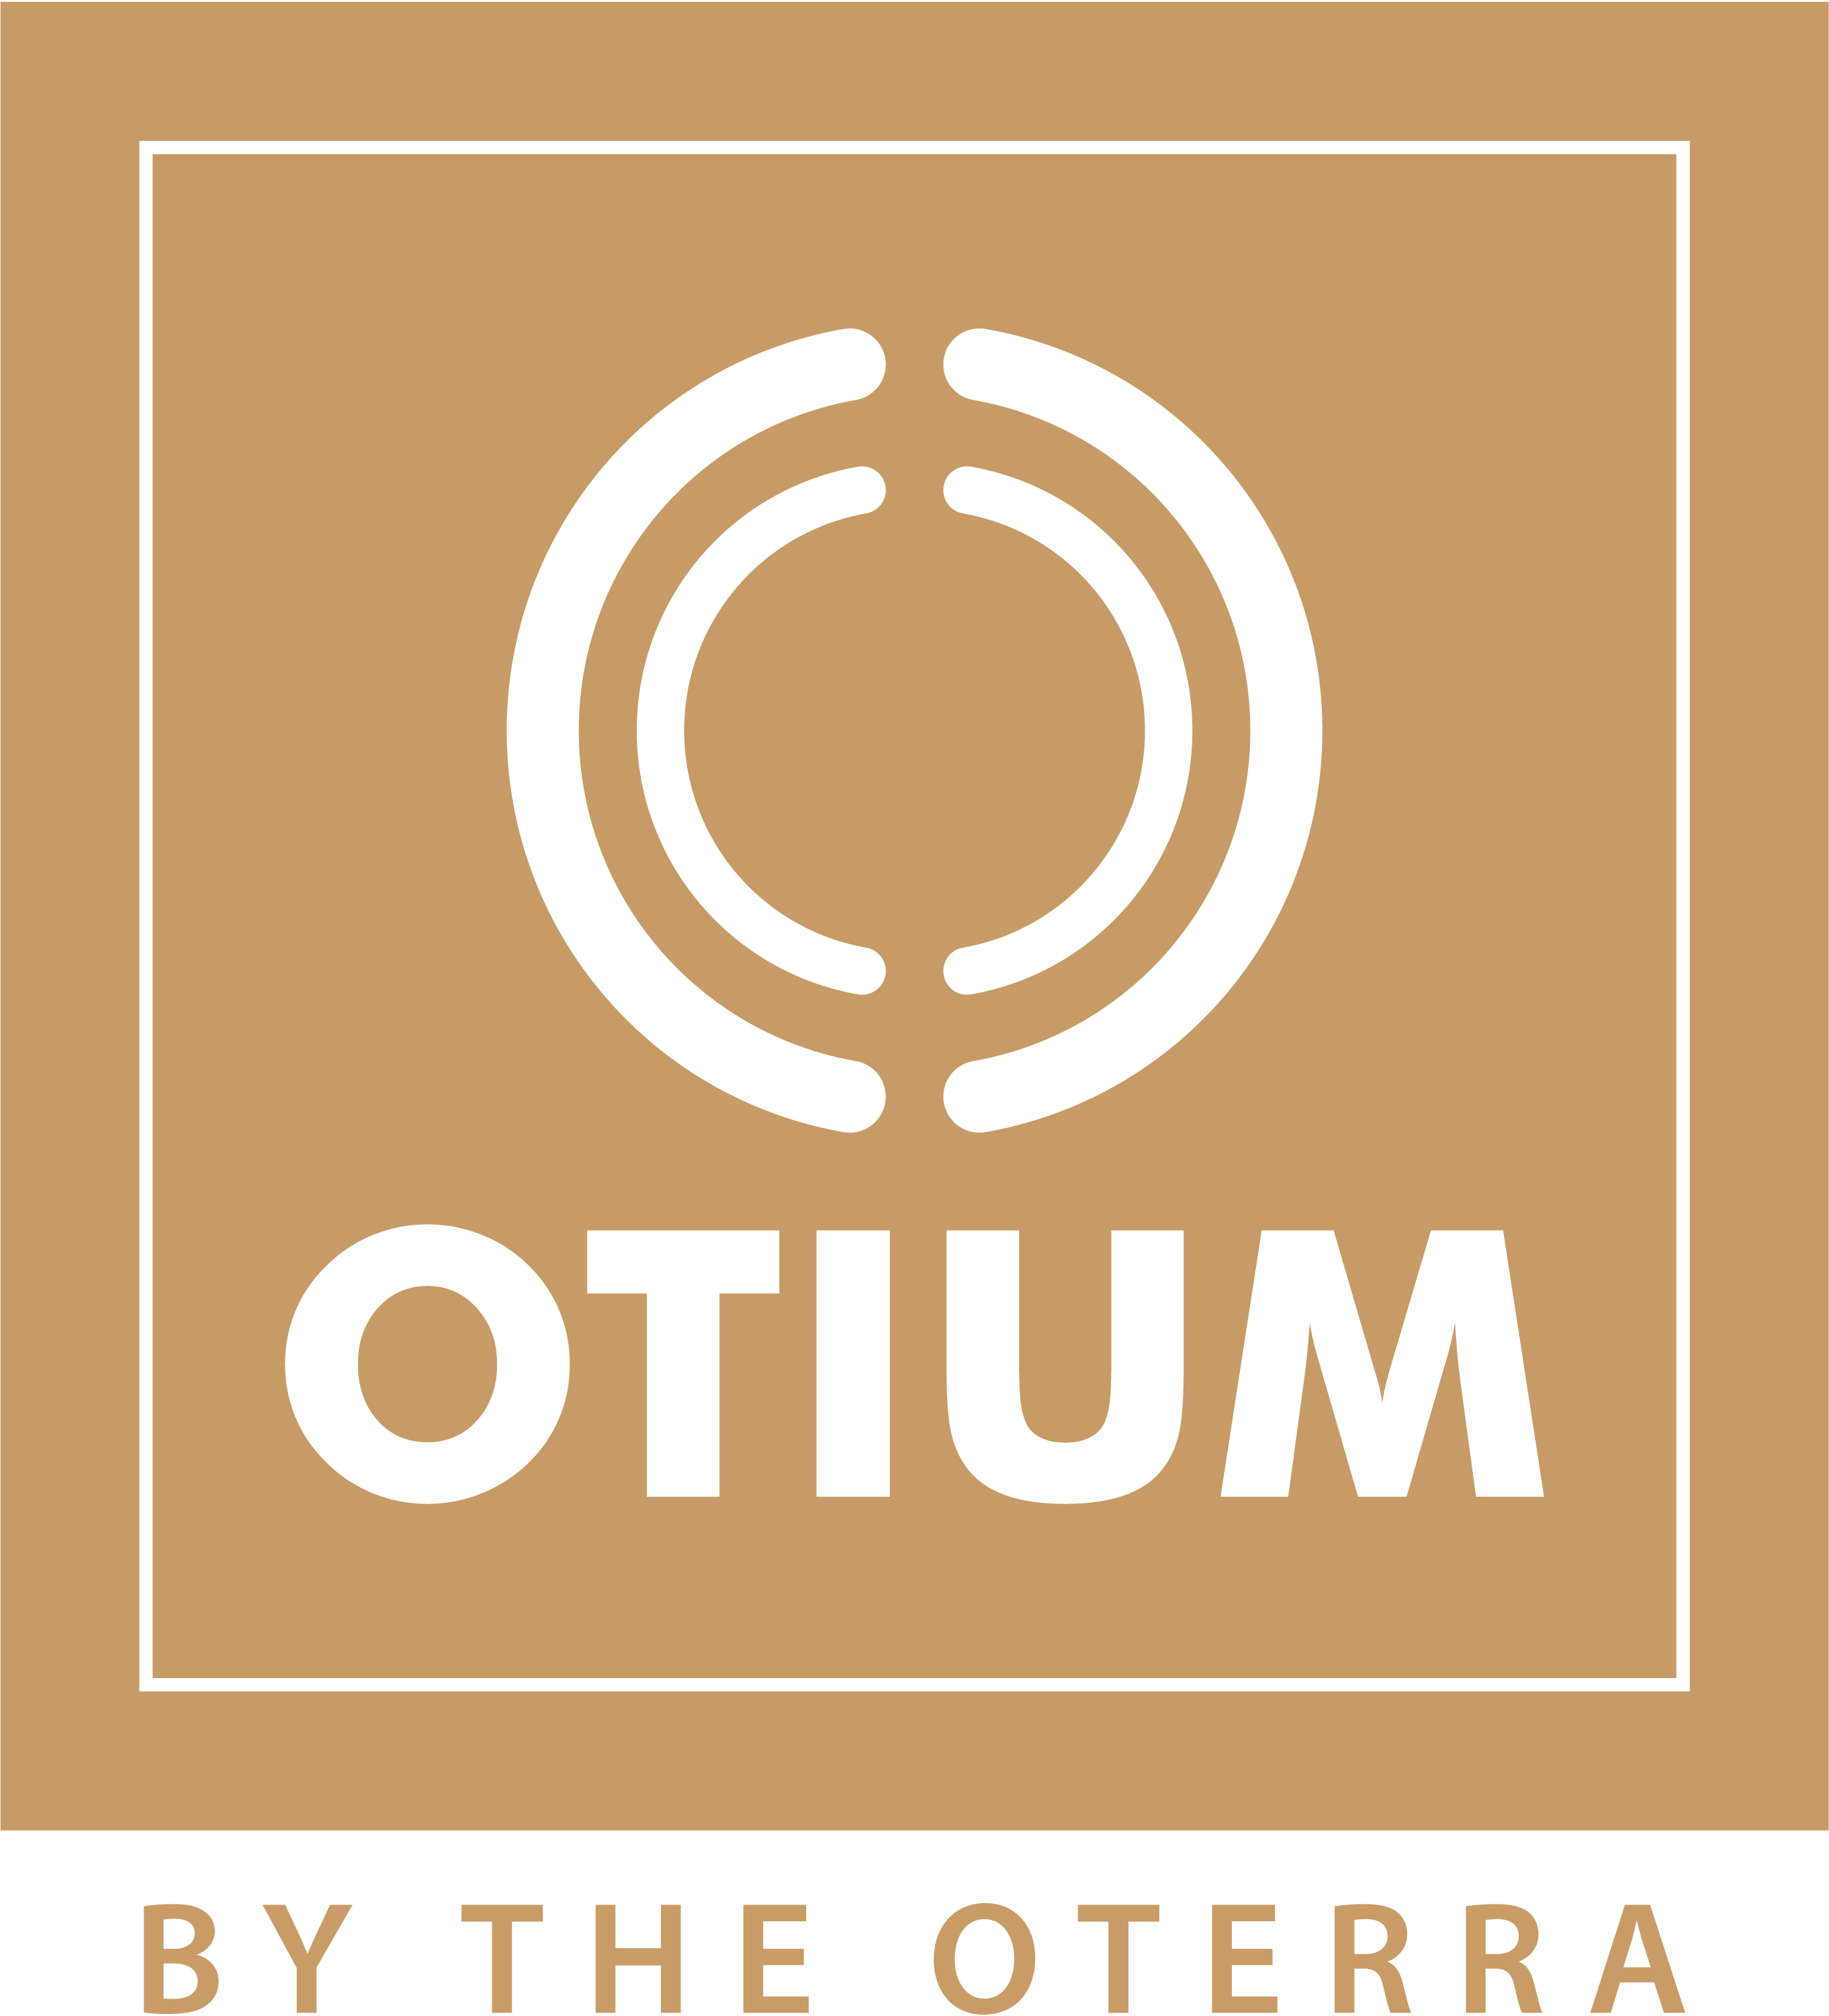 The Otium